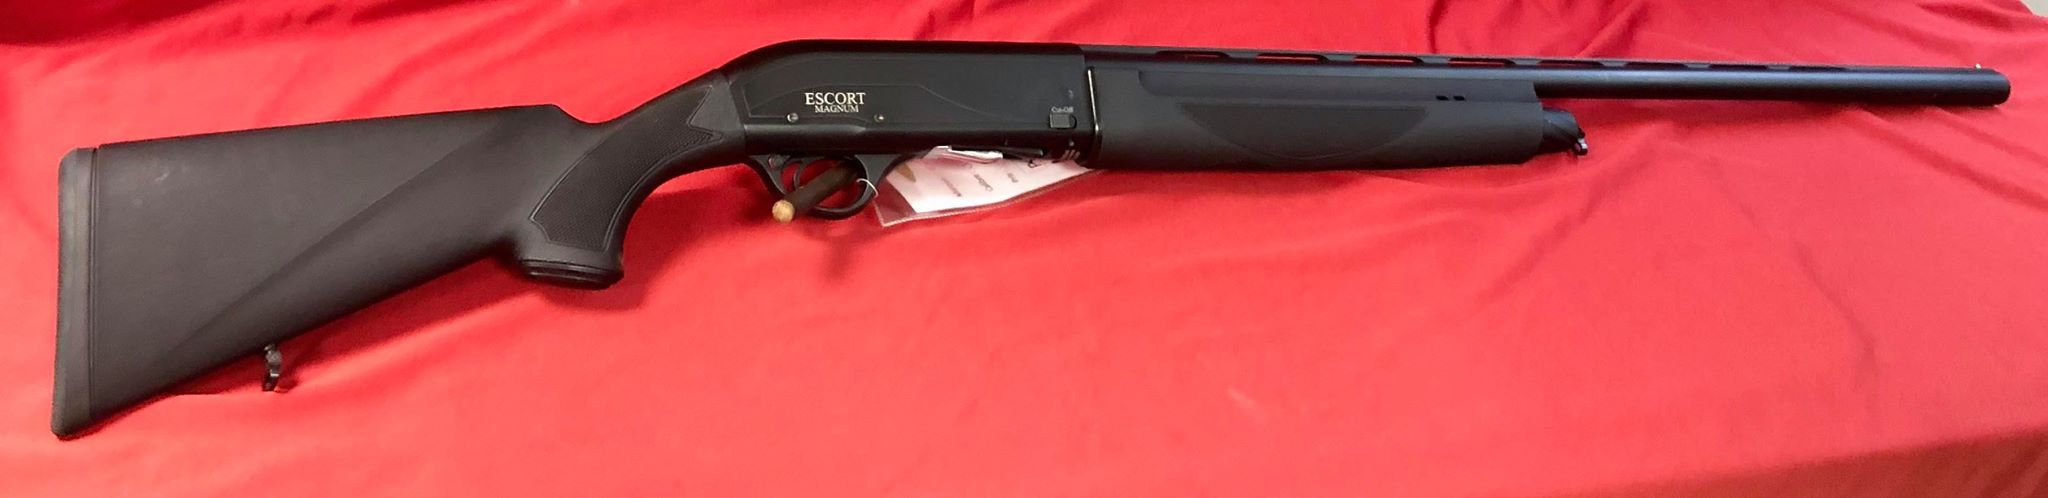 Fusil semi-automatique Escort Magnum en calibre 12/76 gaucher.
Disponible également en droitier.
Chokes interchangeables 
Longueur de canon 76cm
Longueur de crosse 37cm